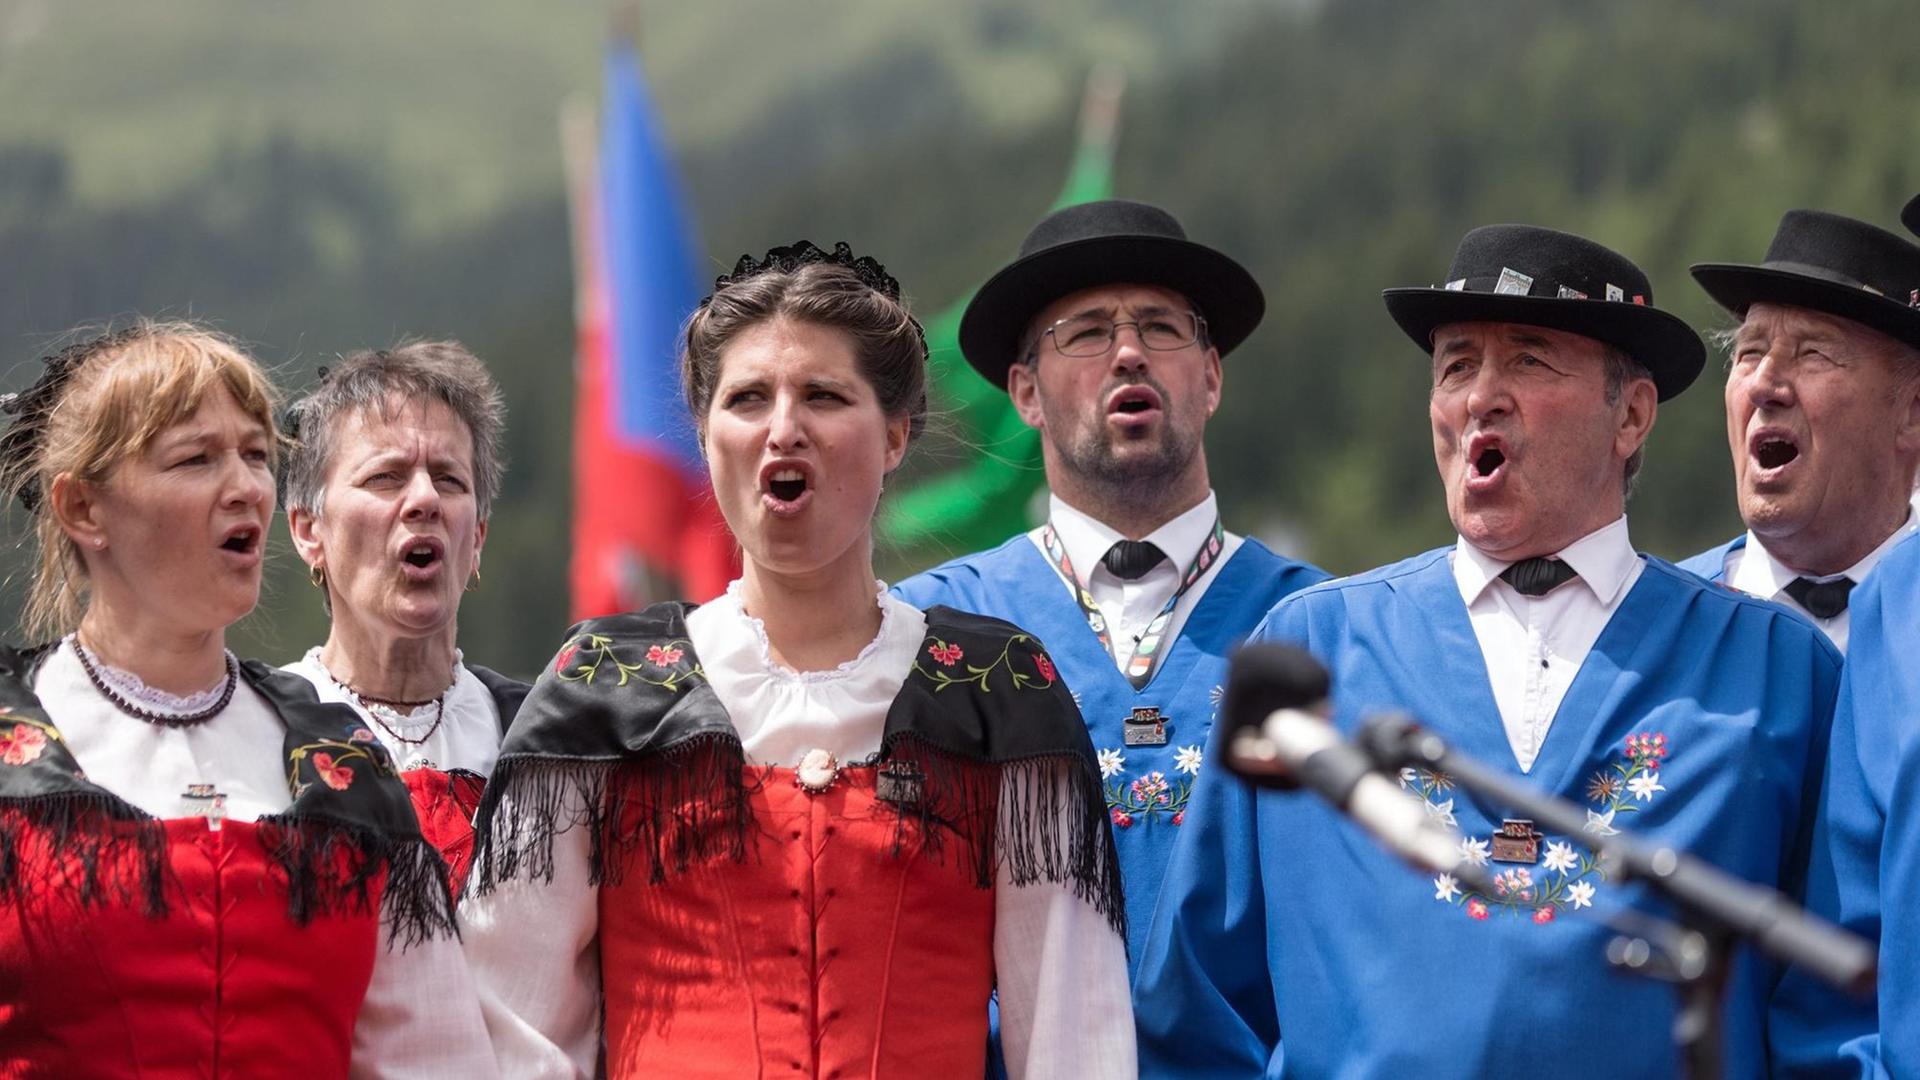 Die Schweizer Jodel-Gruppe "Silvretta Klosters" treten beim Eidgenössischen Jodlerfest auf.